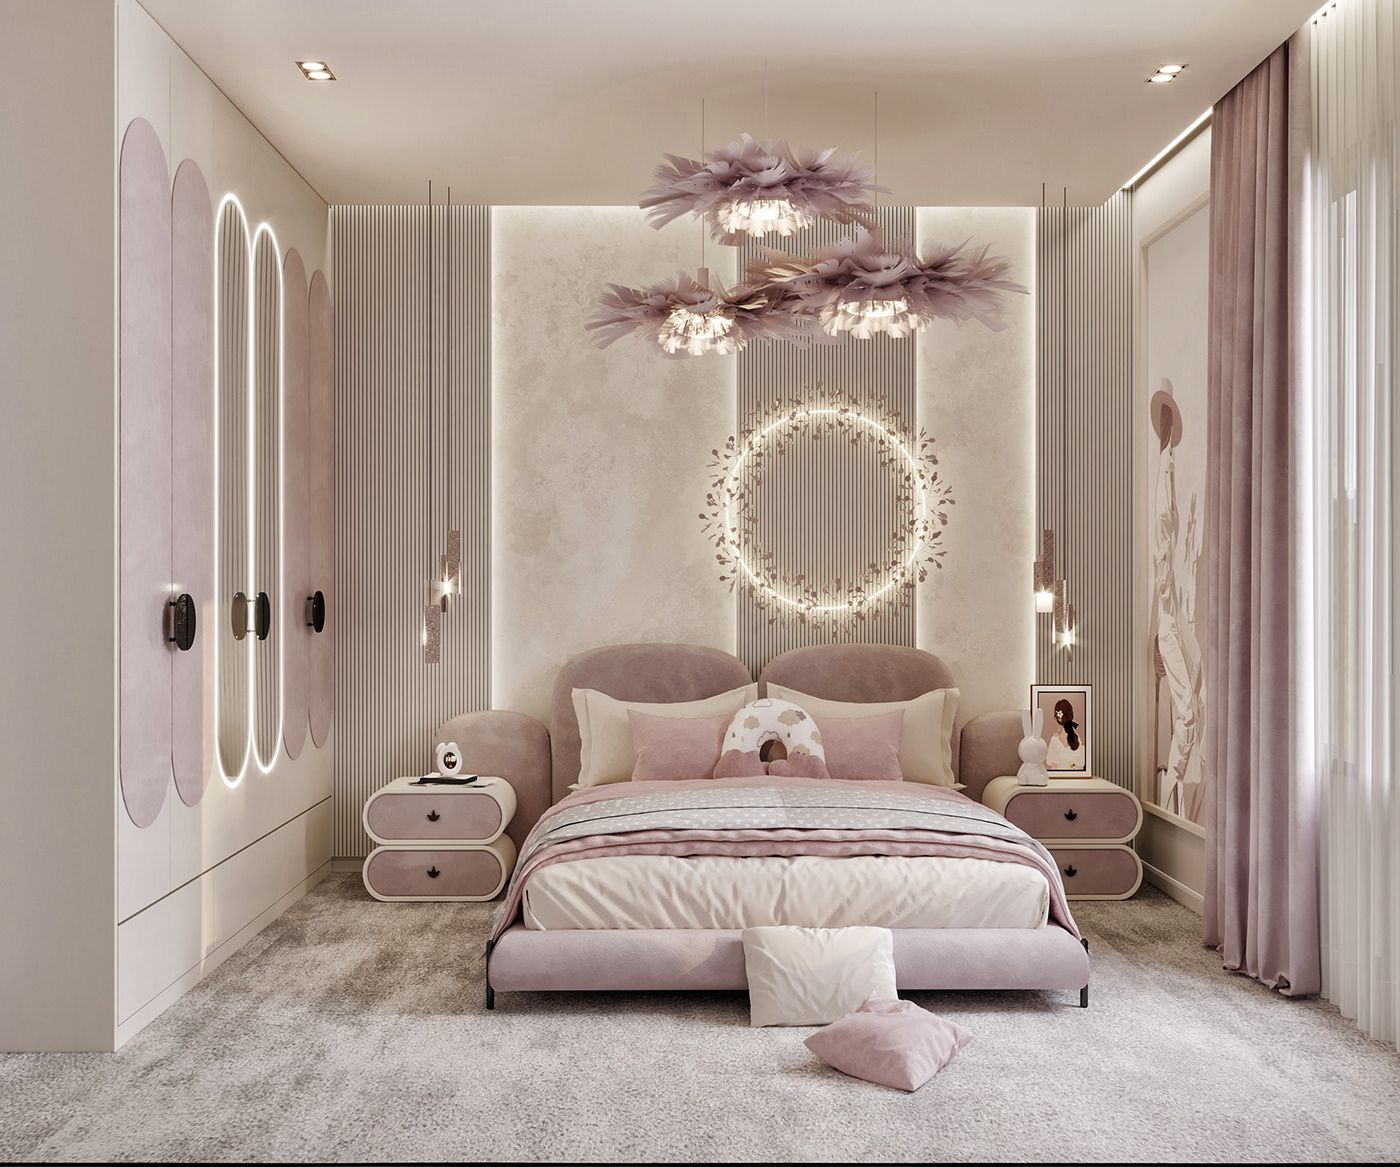 Phong cách Luxury có thể ứng dụng cho phòng ngủ với gam màu hồng đất miễn là bạn biết cách sắp xếp nội thất